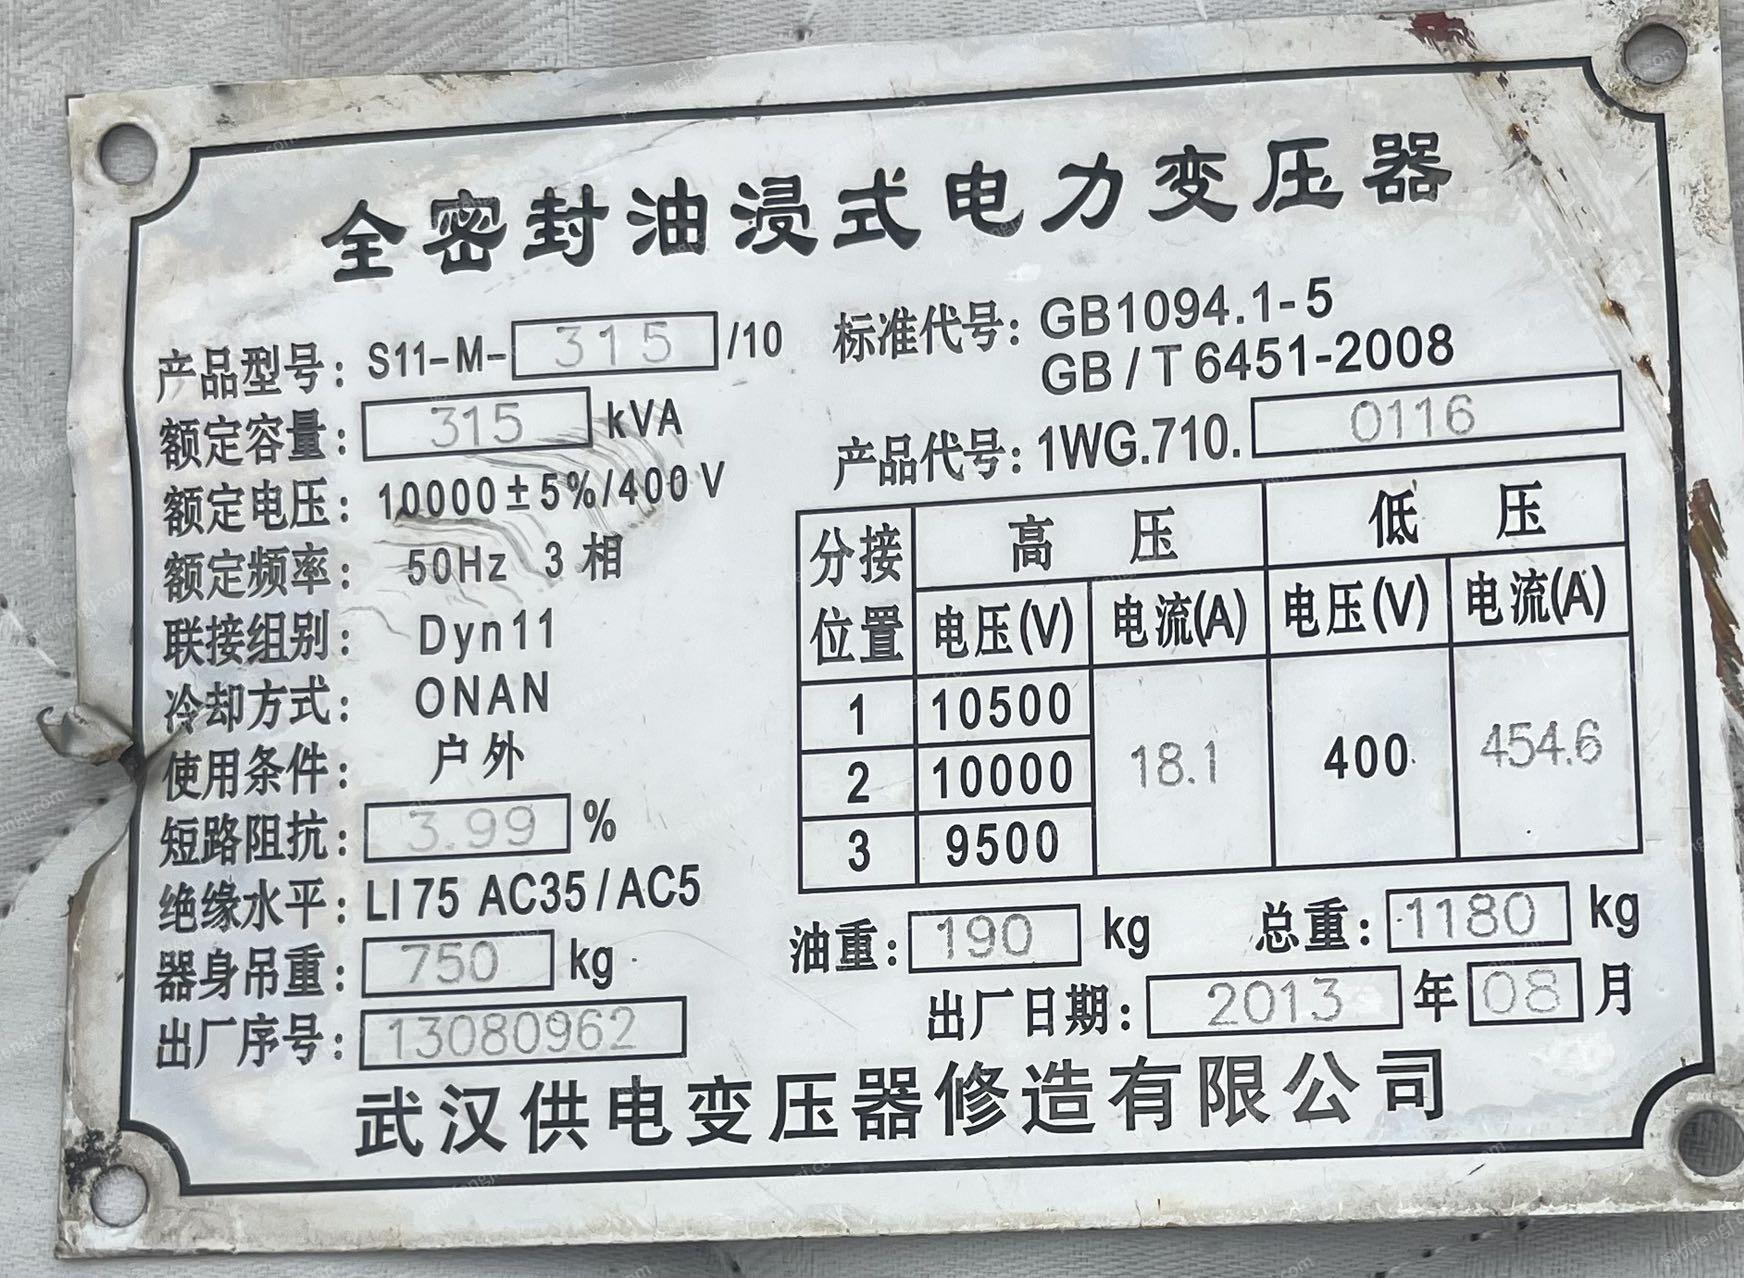 下托七台变压器．徐正400KVW共4台。武汉供电315KVW一台。江苏宝亨315KVW一台。上海置信150KVW一台